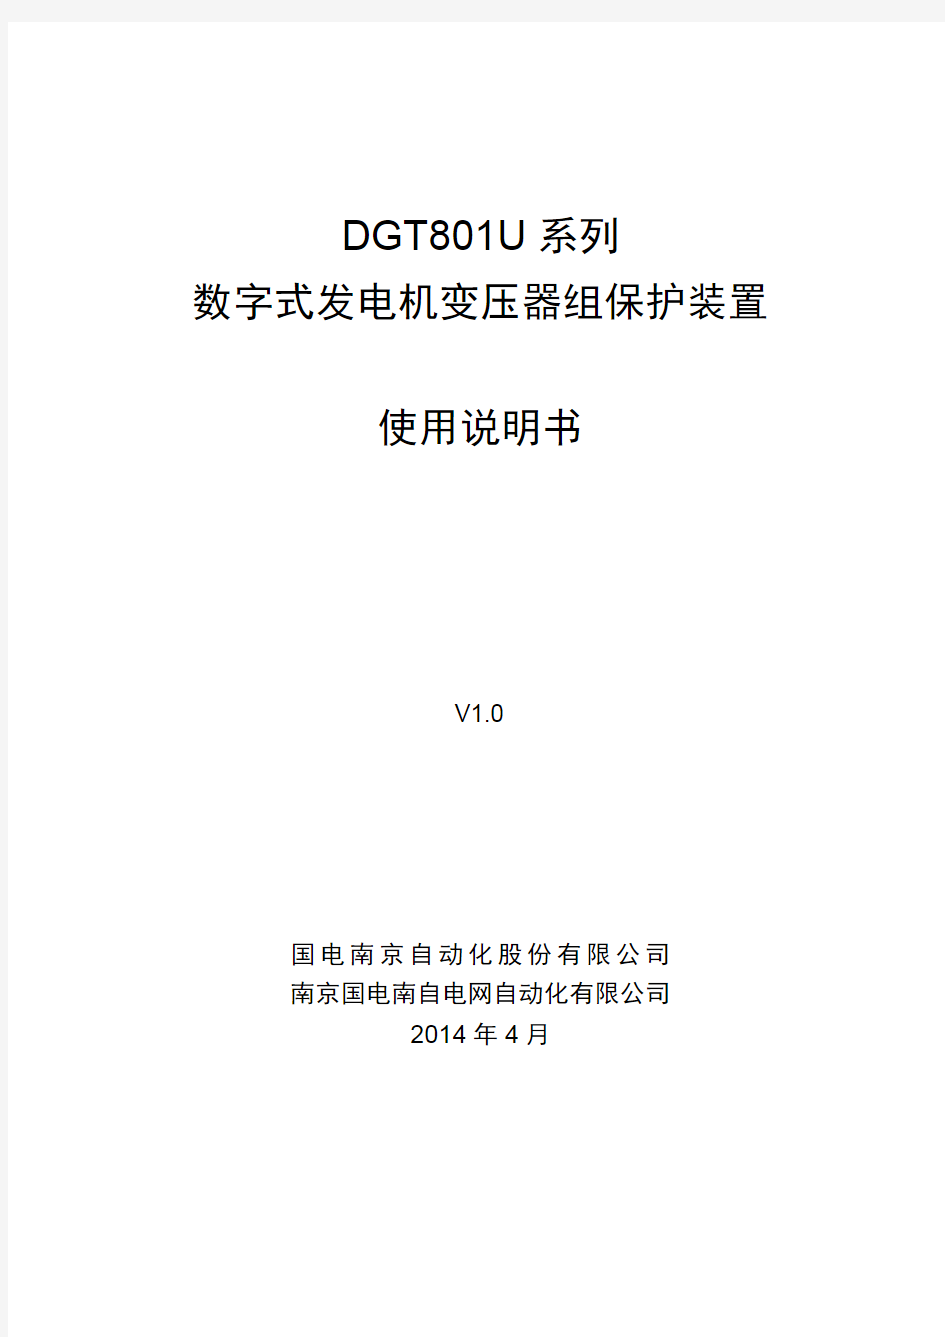 DGT801U 系列数字式发电机变压器组保护装置使用说明书